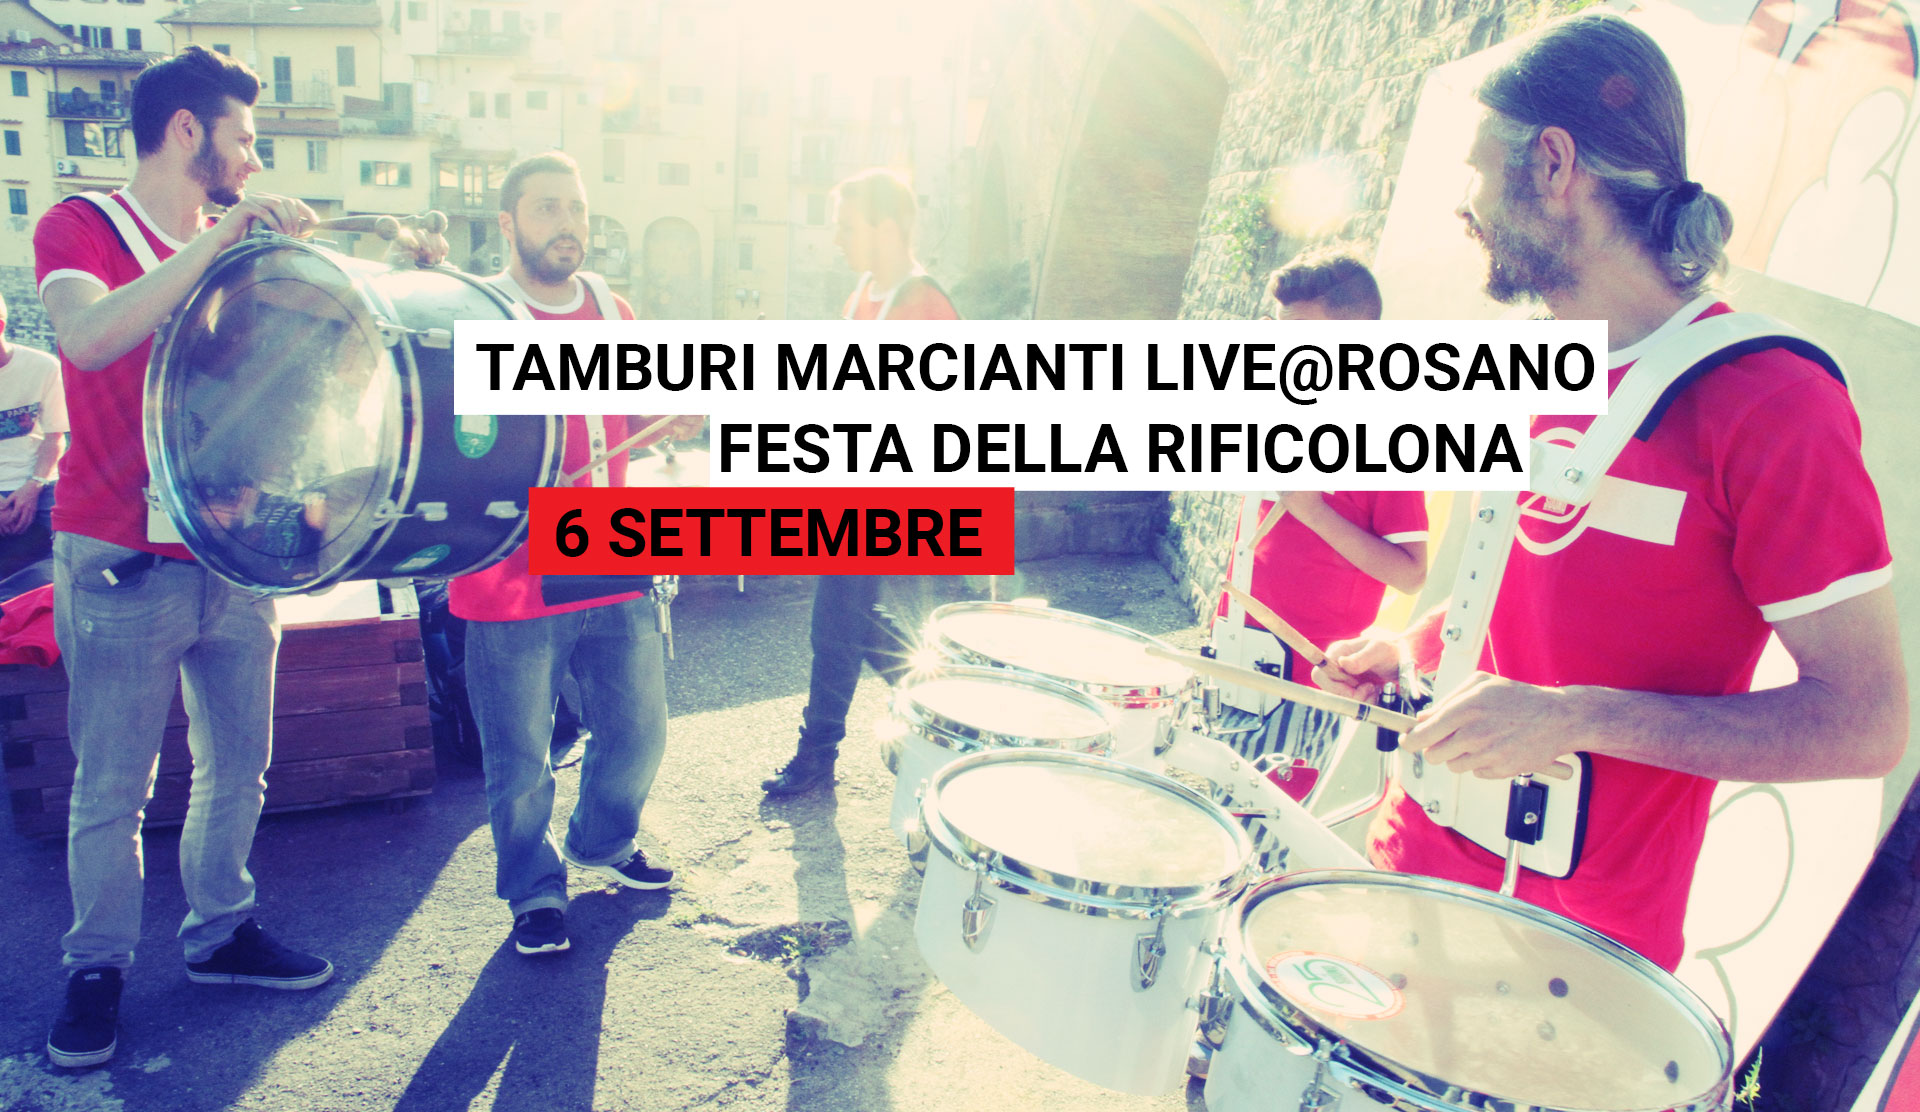 Tamburi Marcianti live@Rosano 6 Settembre ore 21:00